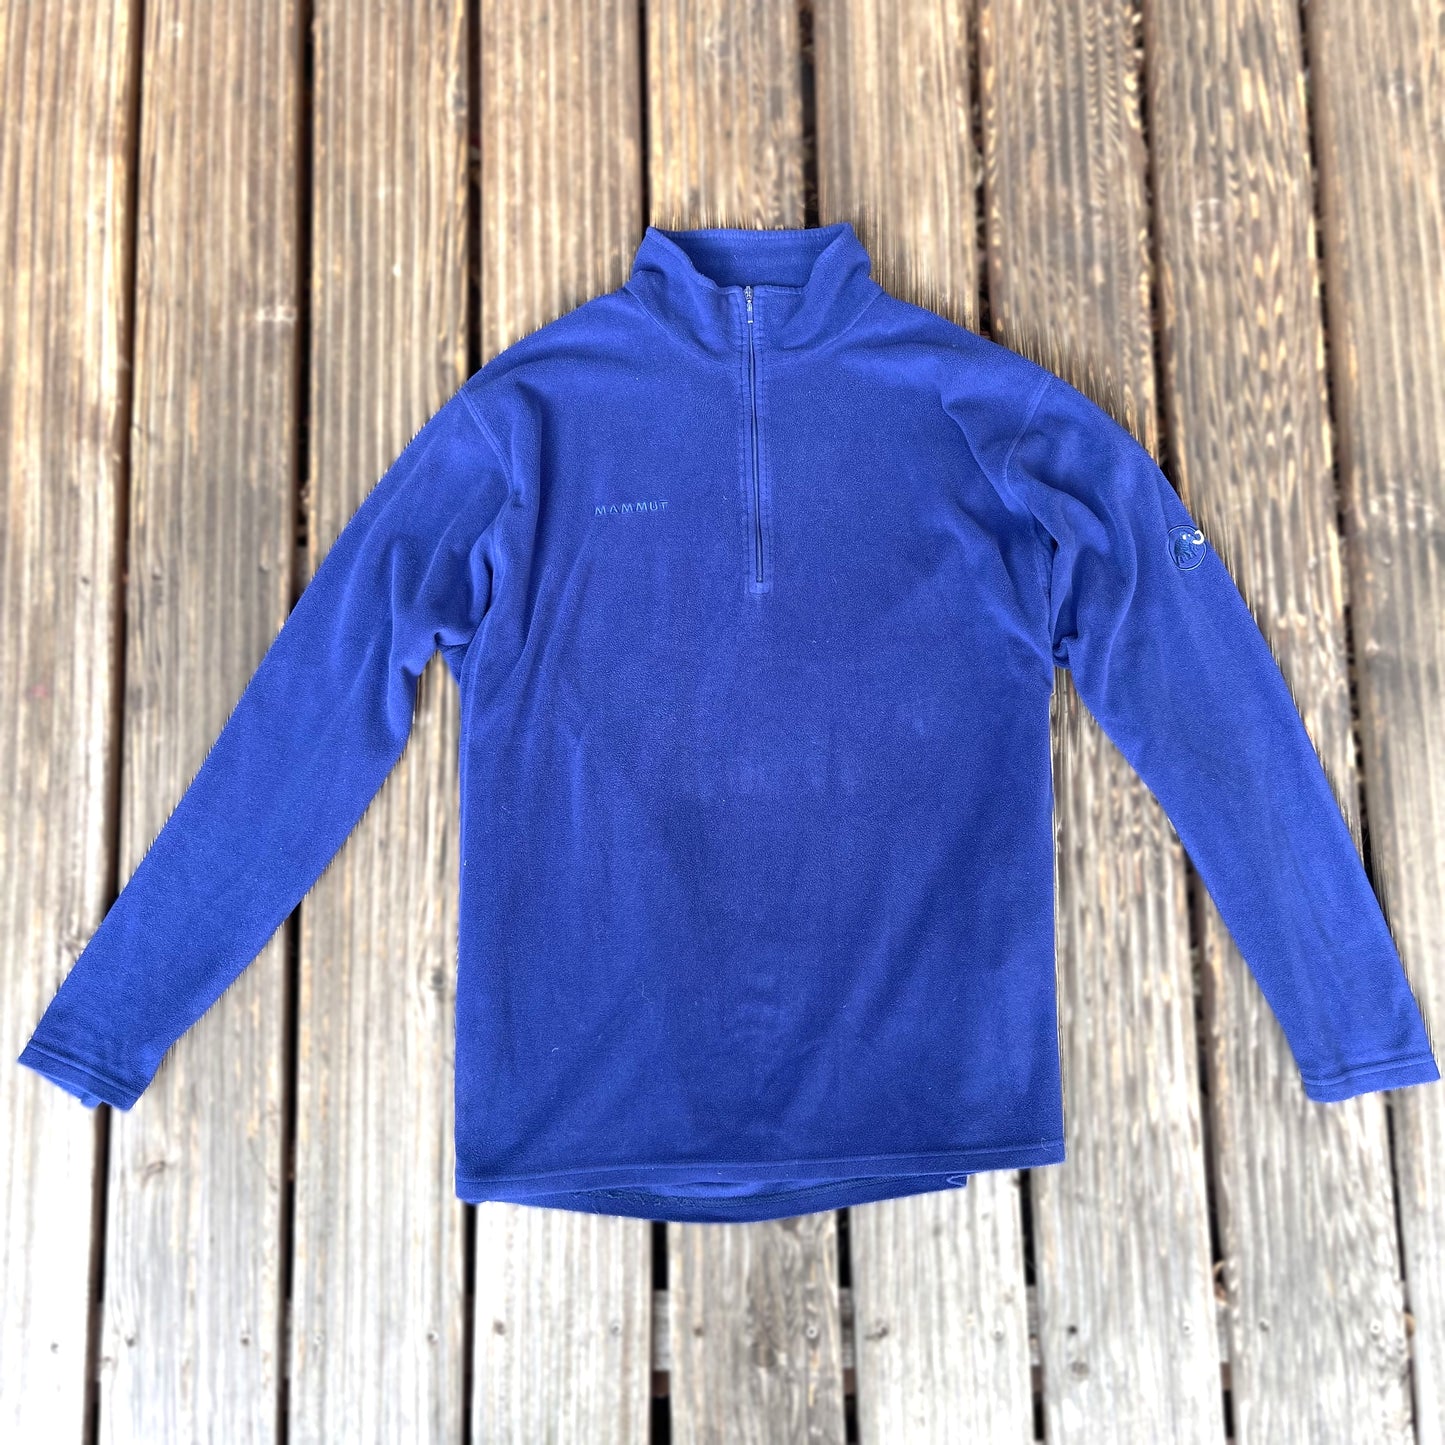 Fleece Pullover von Mammut XL/XXL Herren neck-zip blau